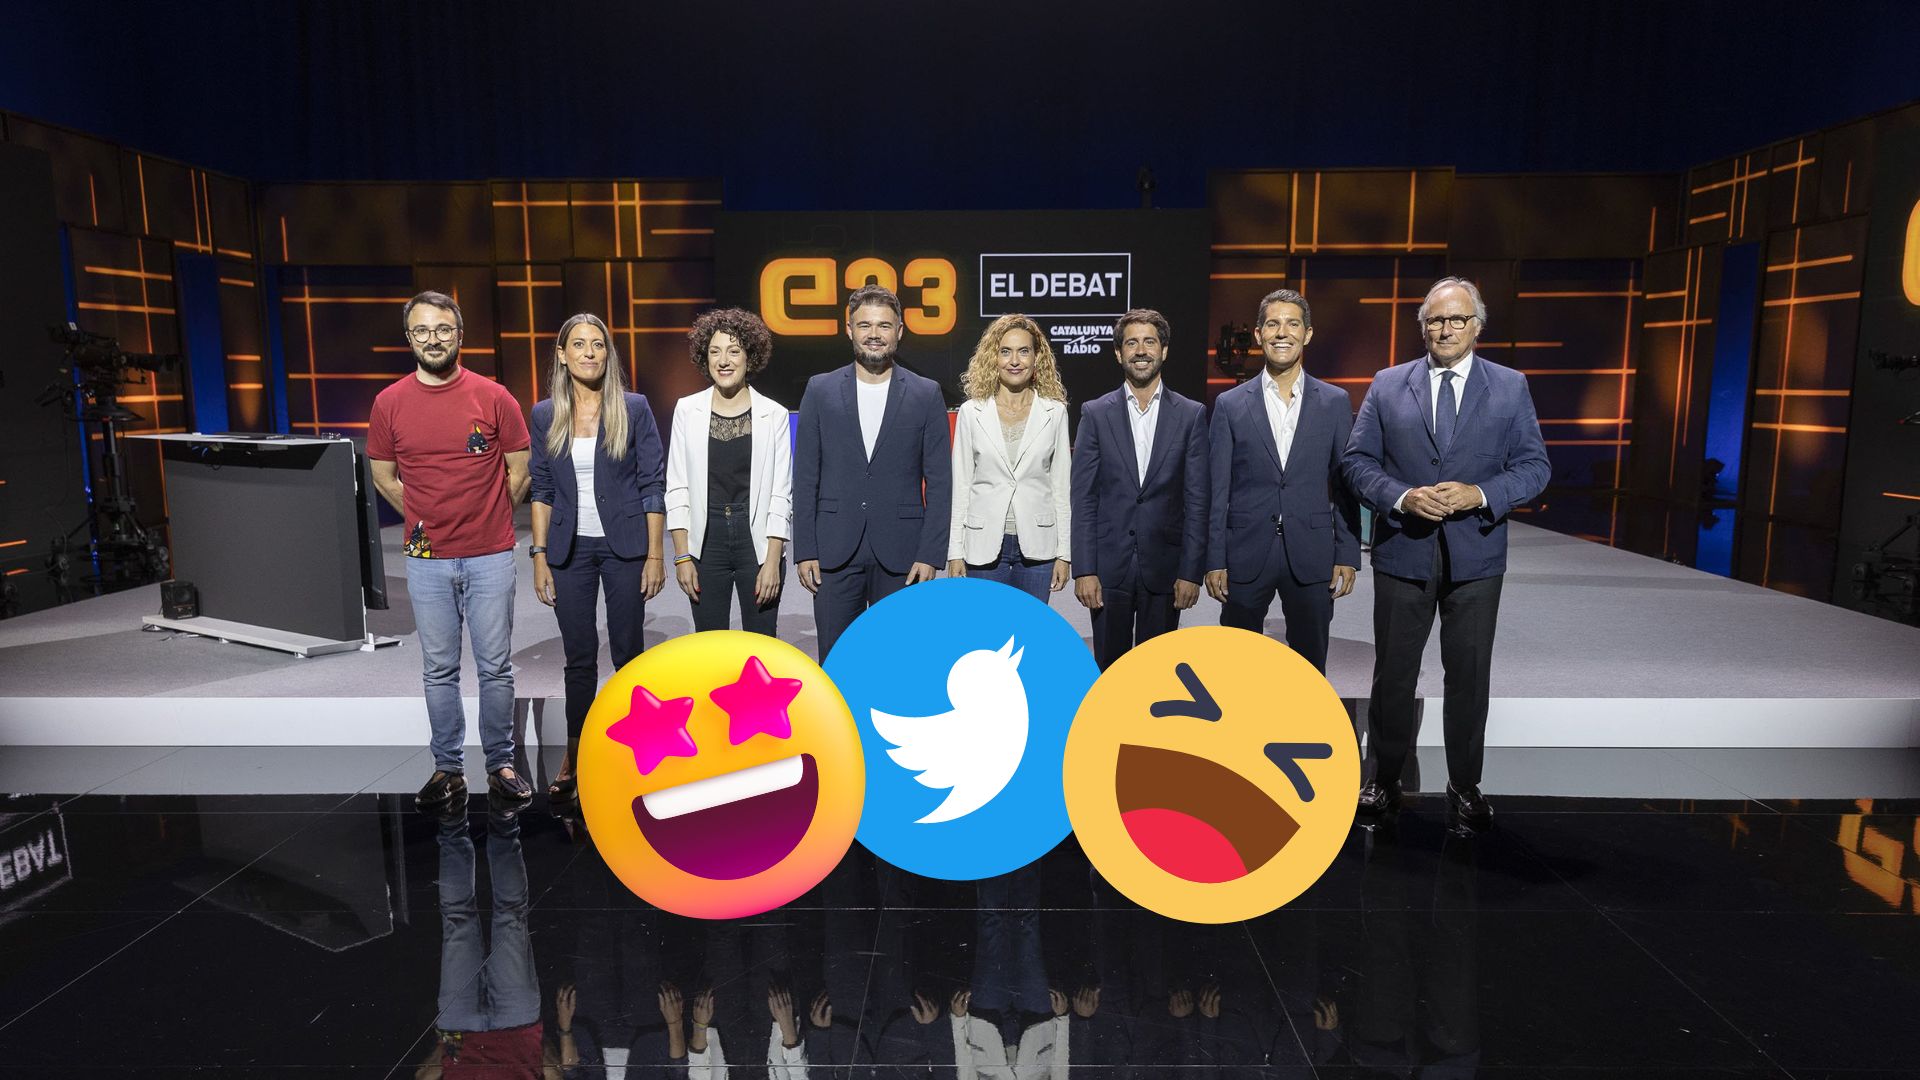 Els divertidíssims mems del debat electoral a TV3: un debat a 8 dona per a molt